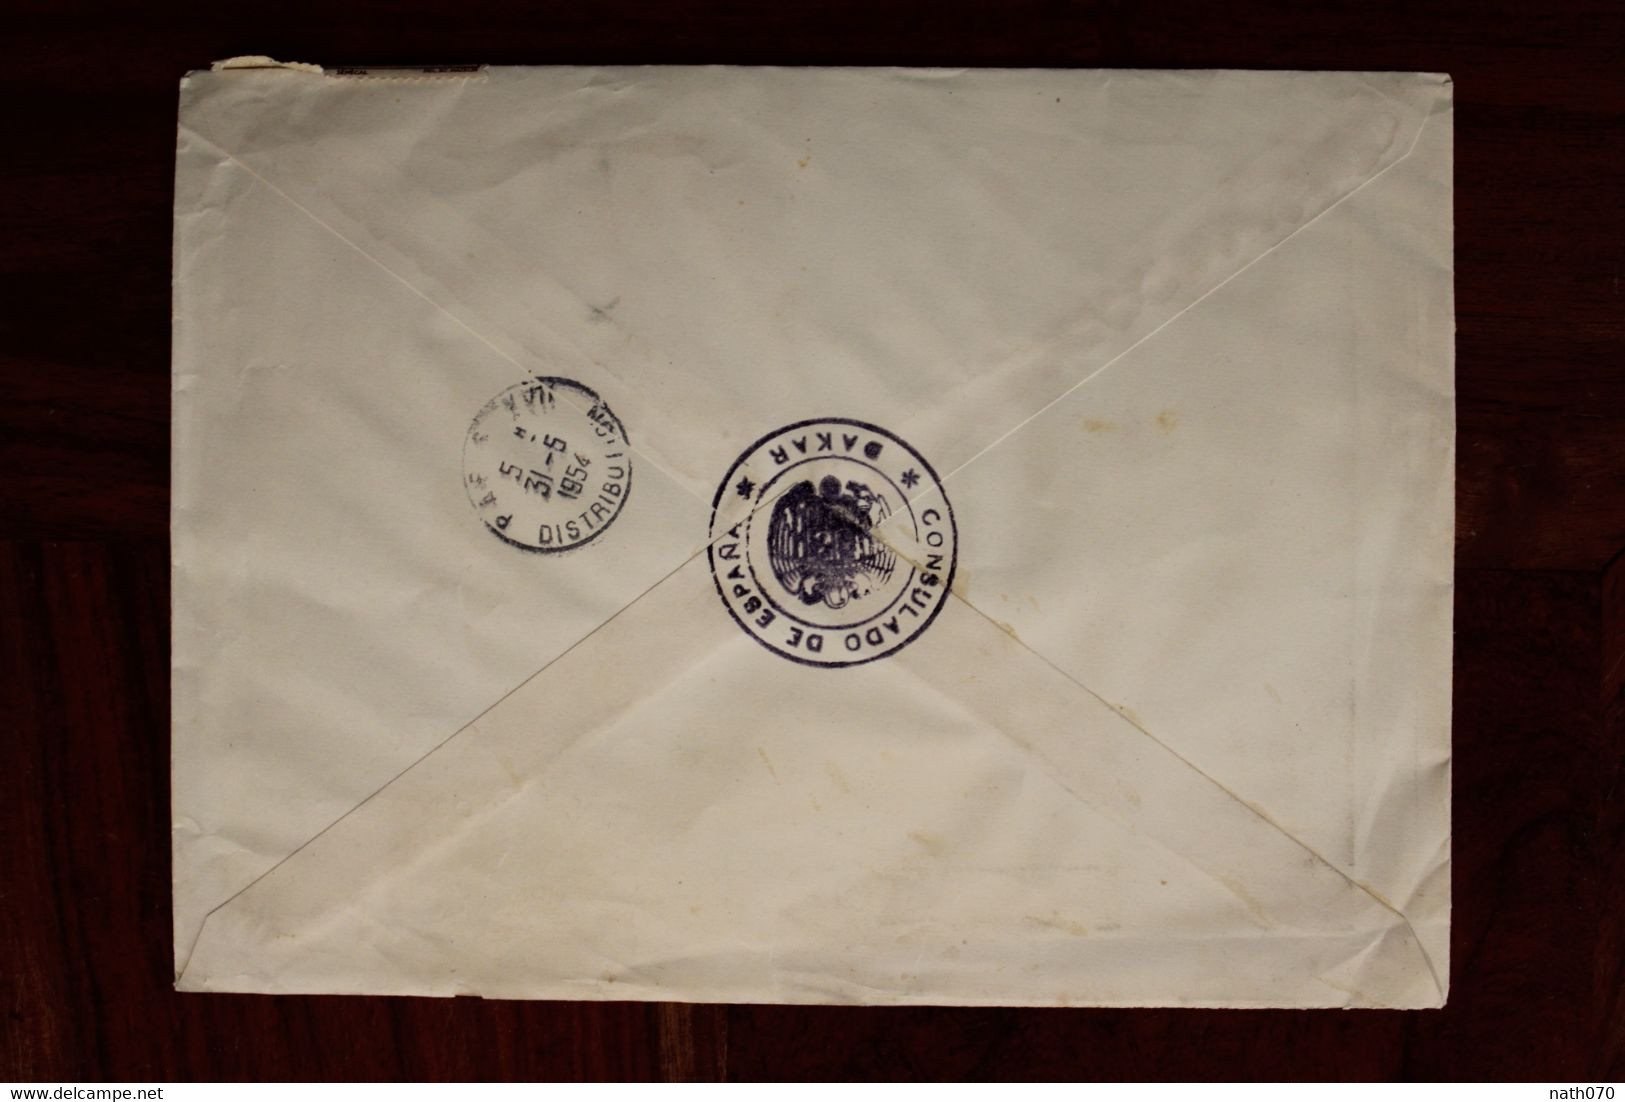 1954 SENEGAL France Enveloppe Consulado Espana Spain Espagne Cover Air Mail Colonies AOF Recommandé Registered R - Storia Postale